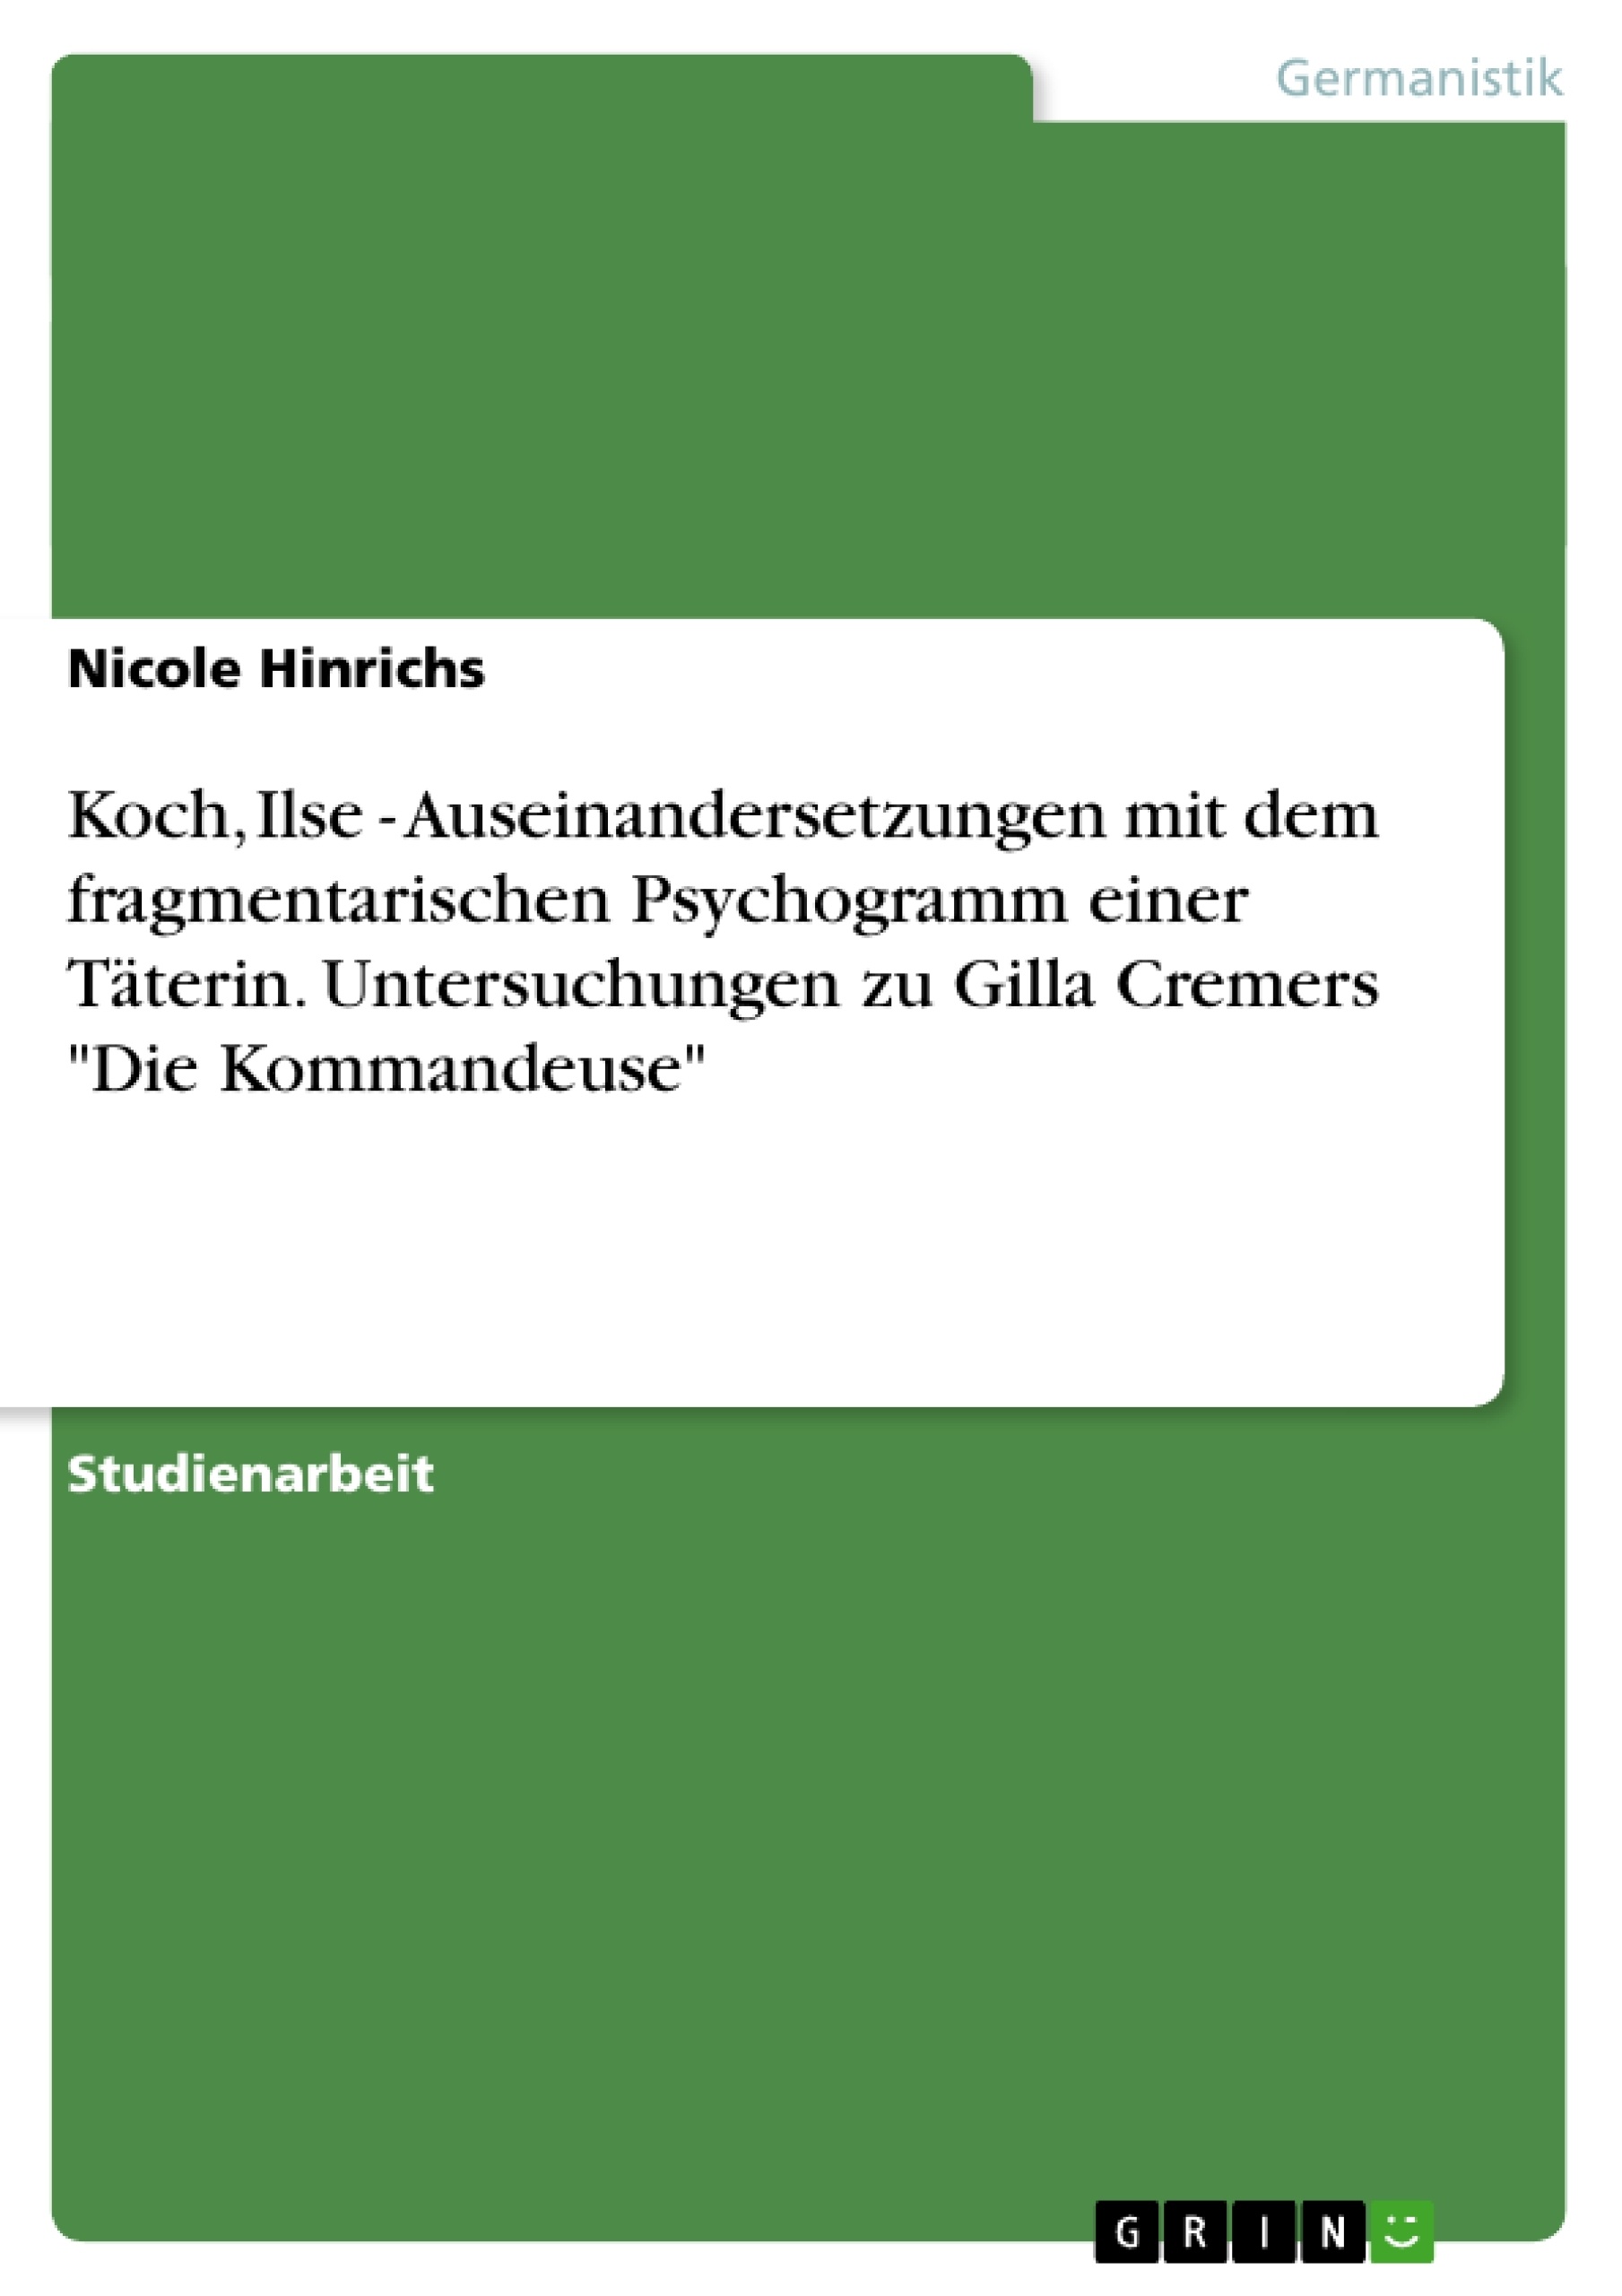 Título: Koch, Ilse - Auseinandersetzungen mit dem fragmentarischen Psychogramm einer Täterin. Untersuchungen zu Gilla Cremers "Die Kommandeuse"